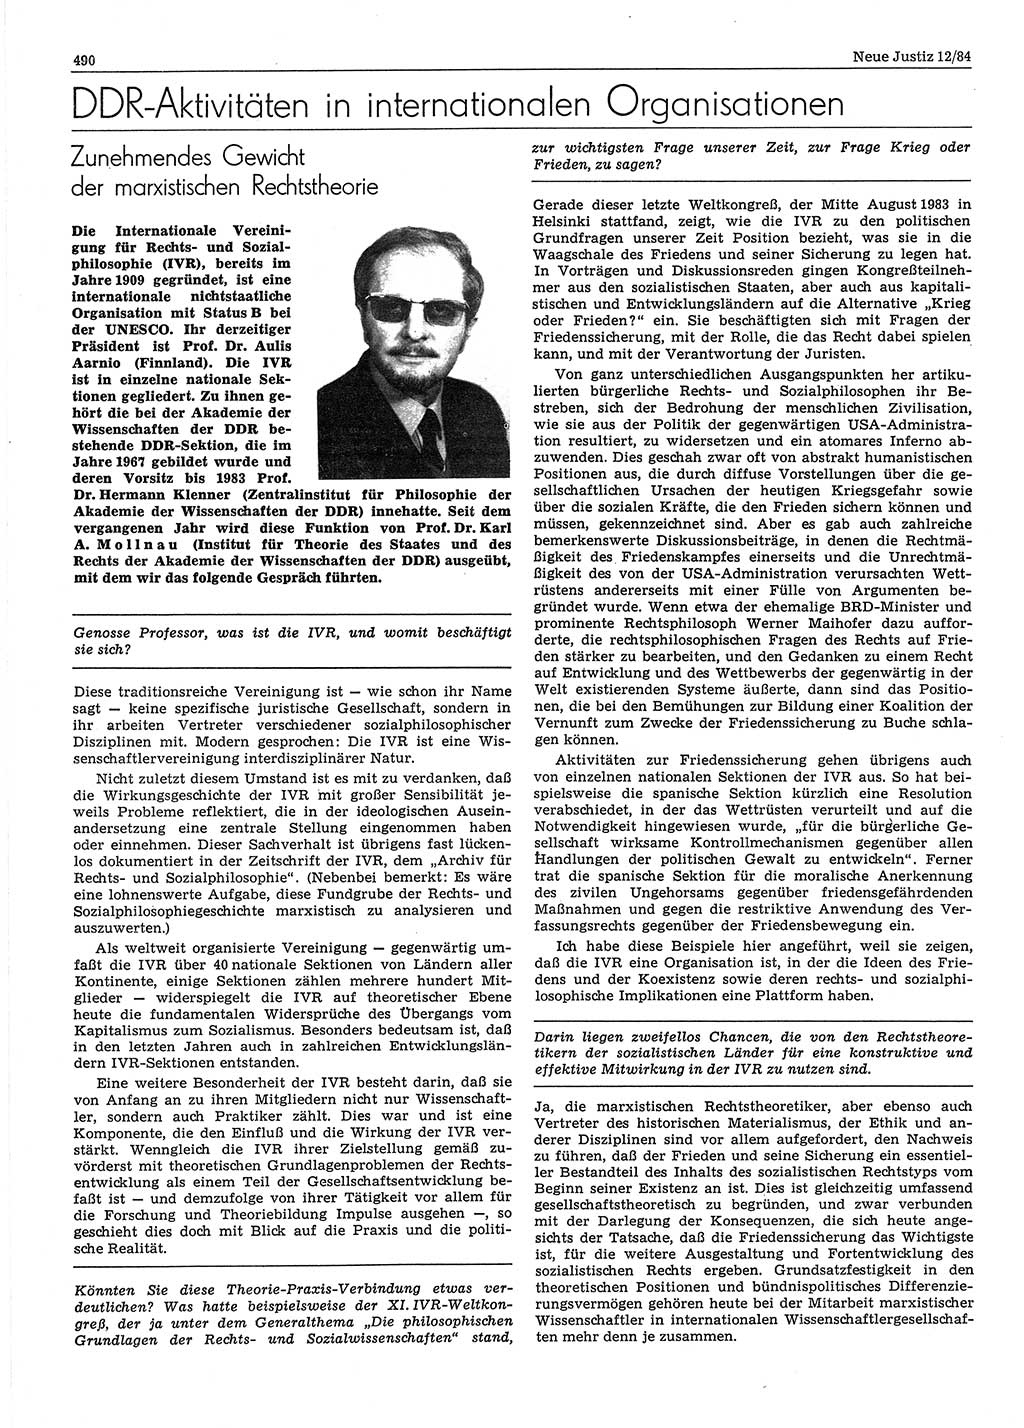 Neue Justiz (NJ), Zeitschrift für sozialistisches Recht und Gesetzlichkeit [Deutsche Demokratische Republik (DDR)], 38. Jahrgang 1984, Seite 490 (NJ DDR 1984, S. 490)